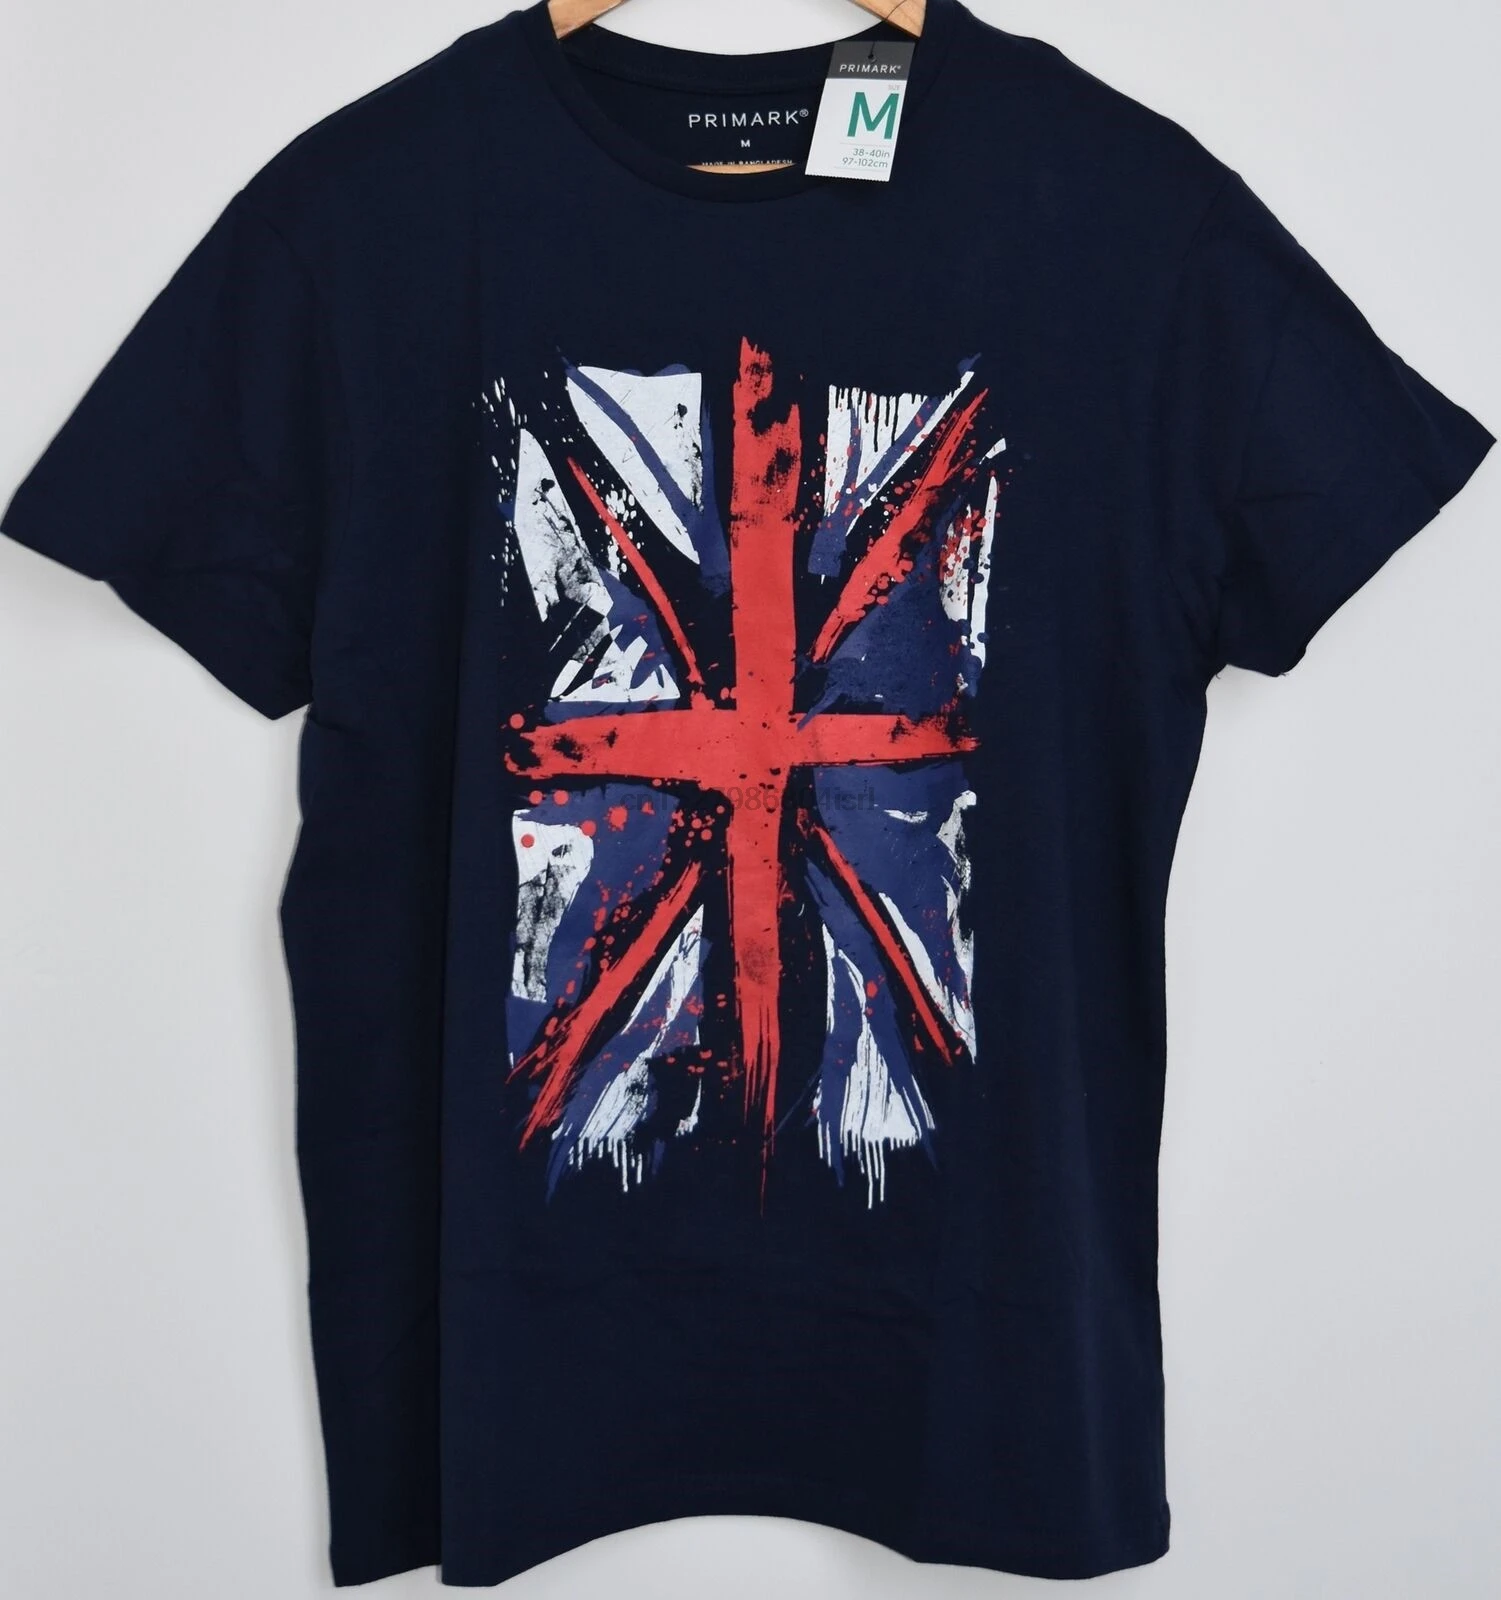 Primark Union Jack Camiseta para hombre con bandera británica, GB, tallas a XXXL, Reino Unido|Camisetas|